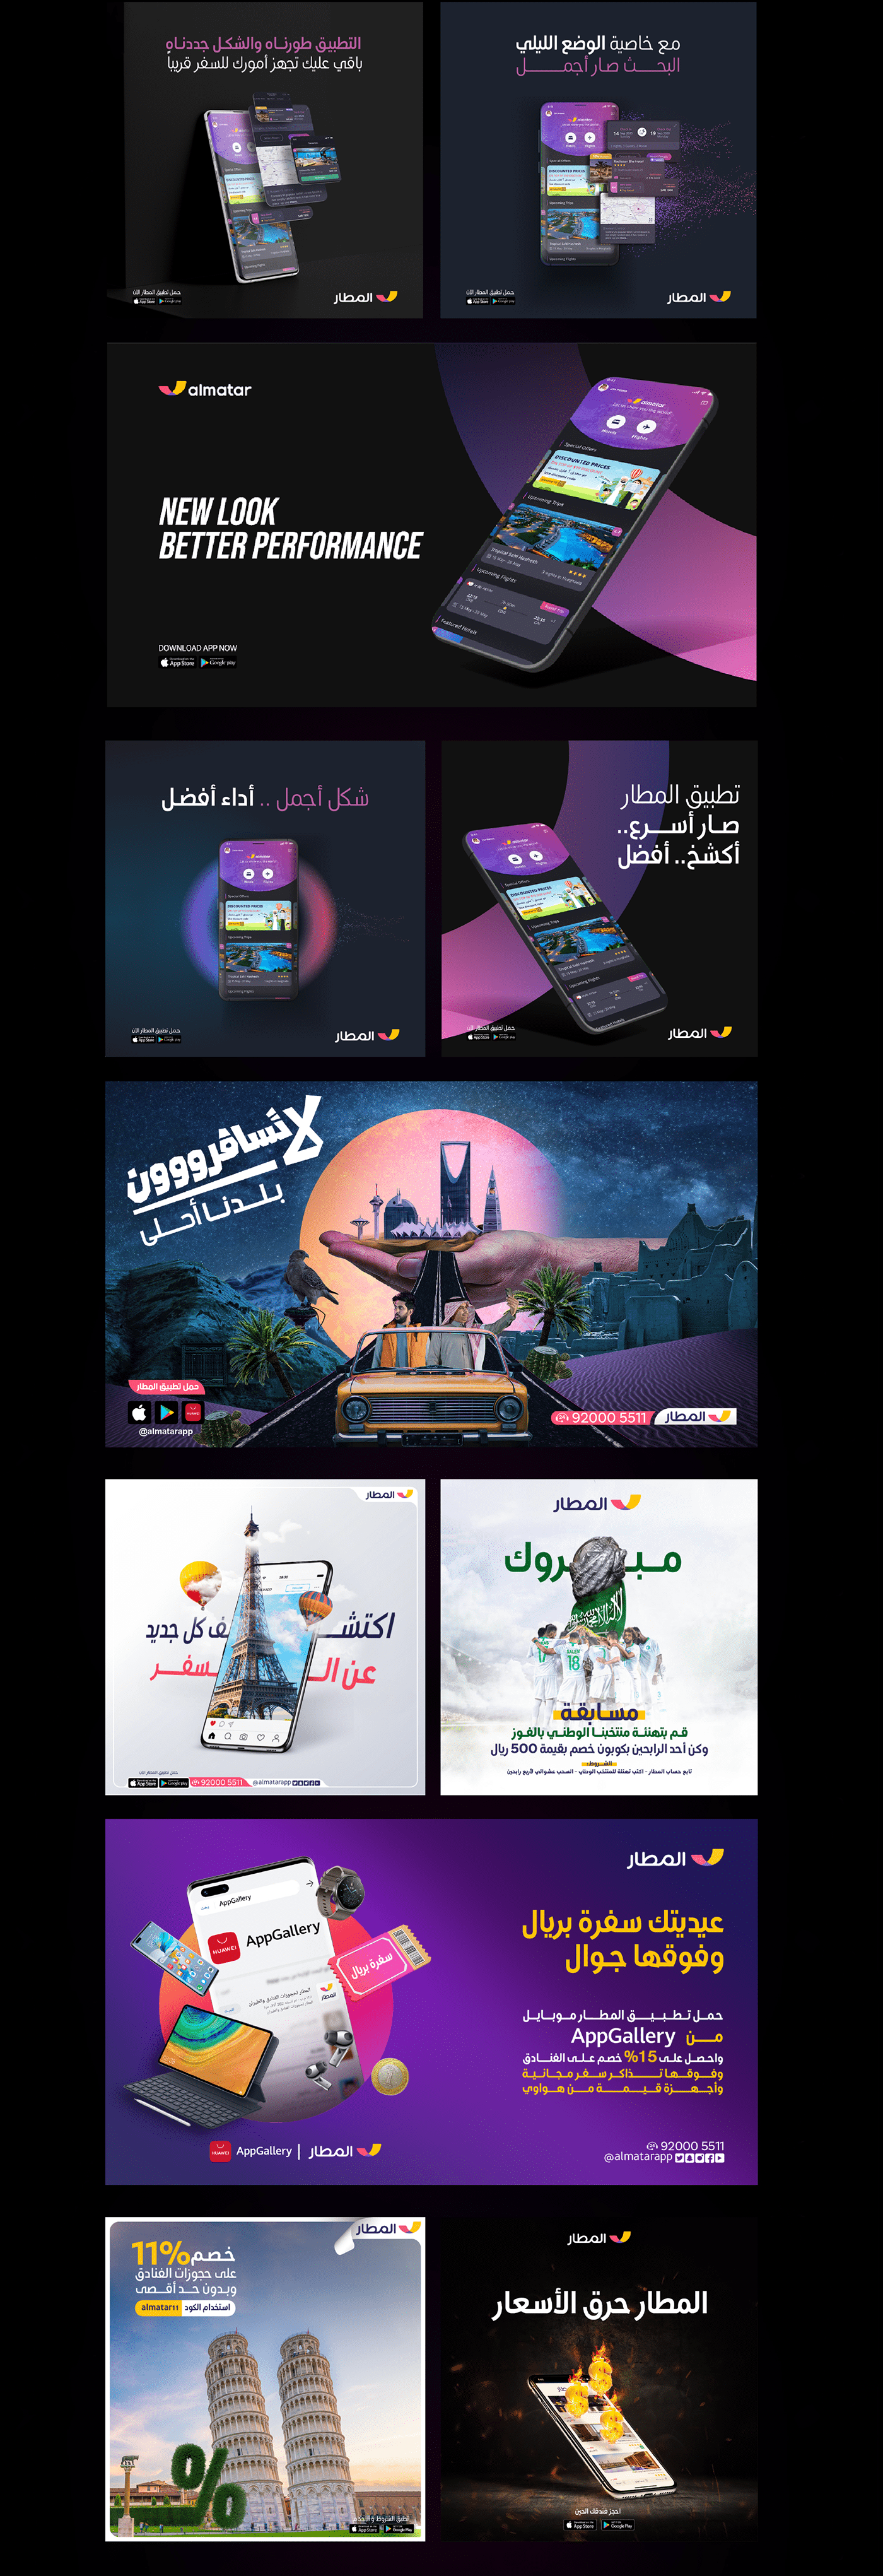 Advertising  almatar app branding  KSA Saudi Arabia social media Social media post Socialmedia Travel